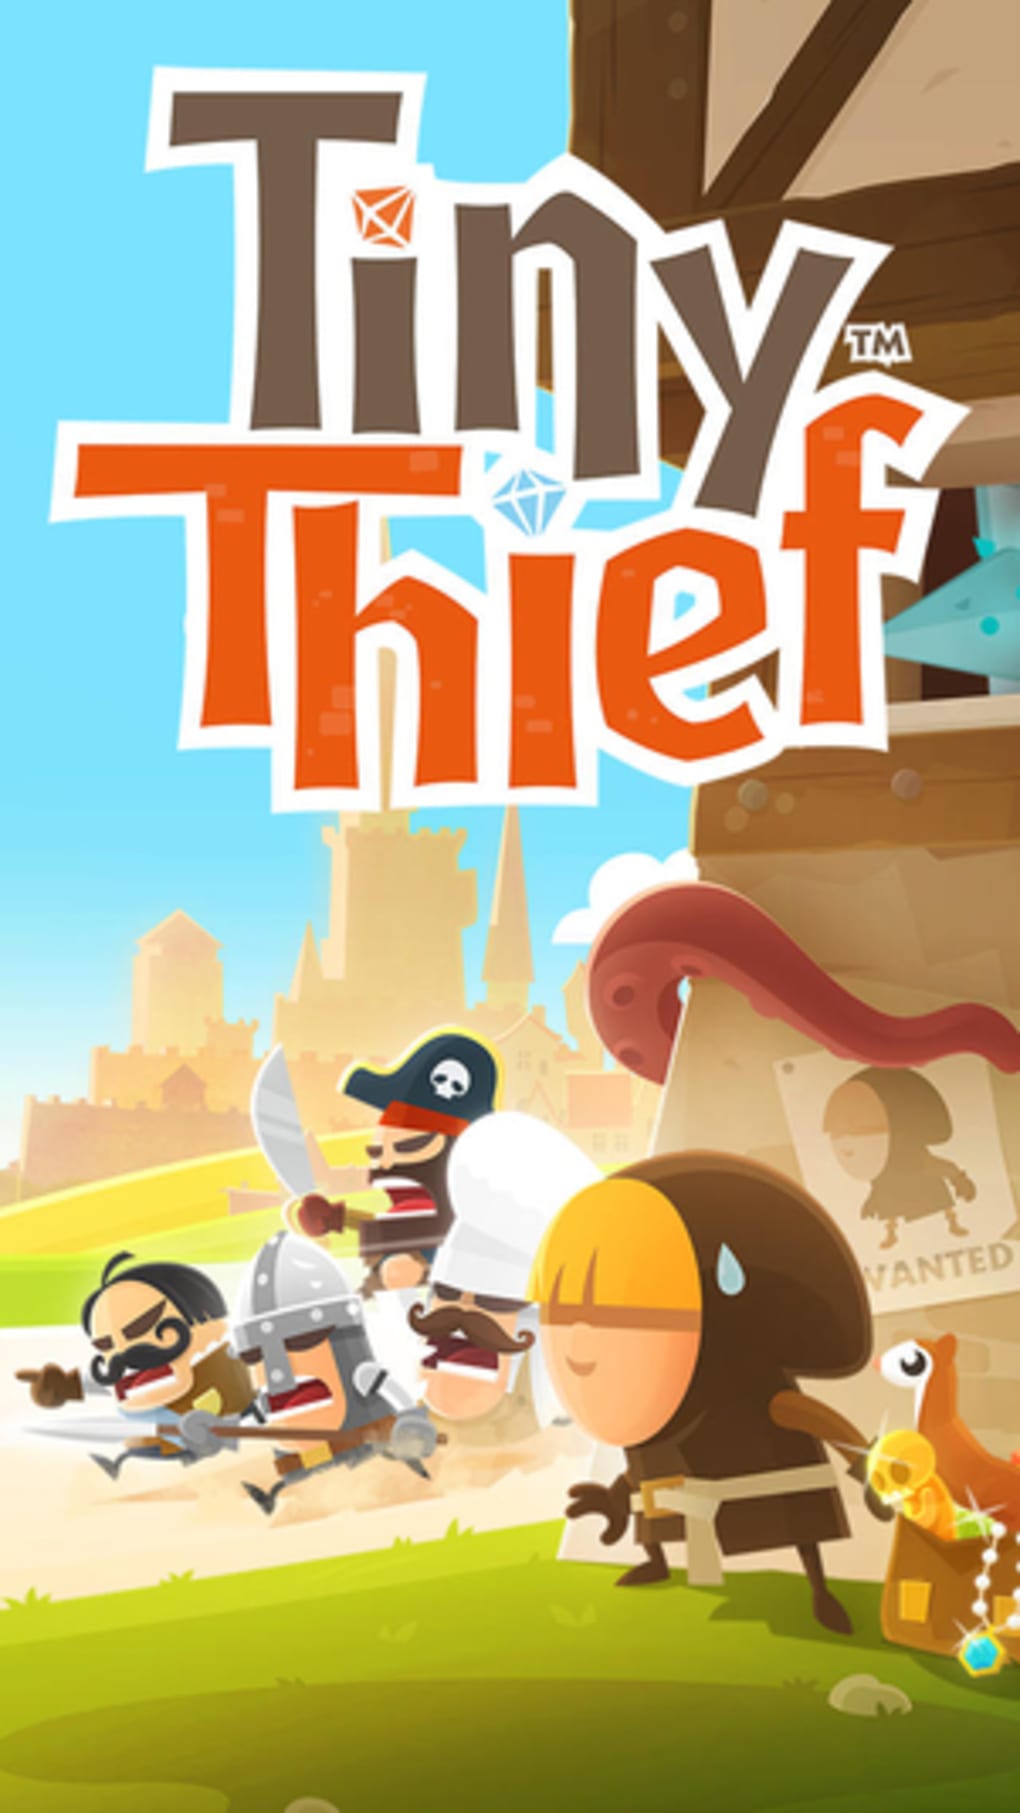 play tiny thief